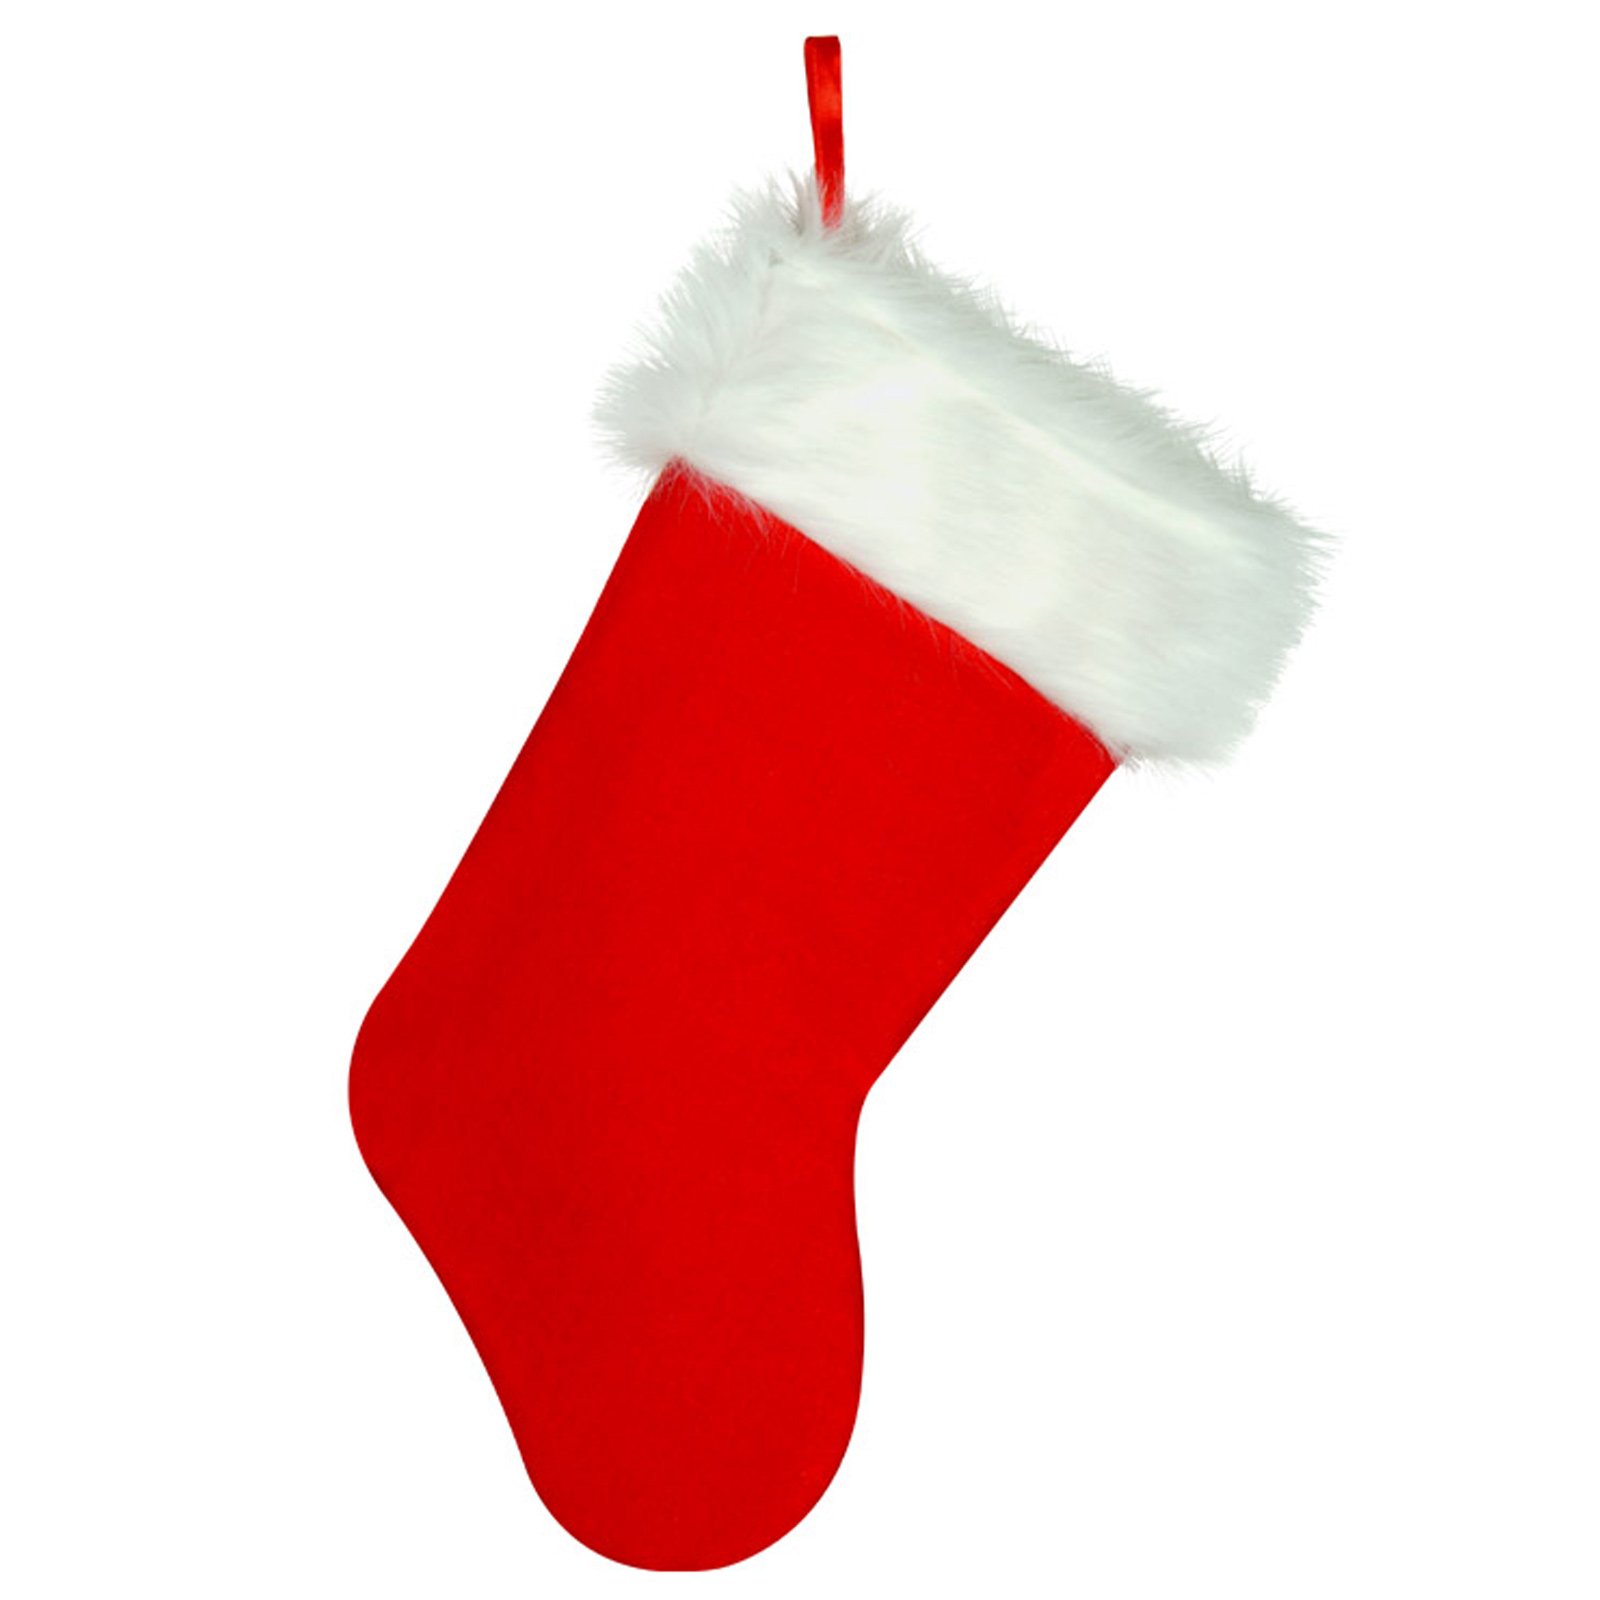 xmas stocking clipart - photo #41